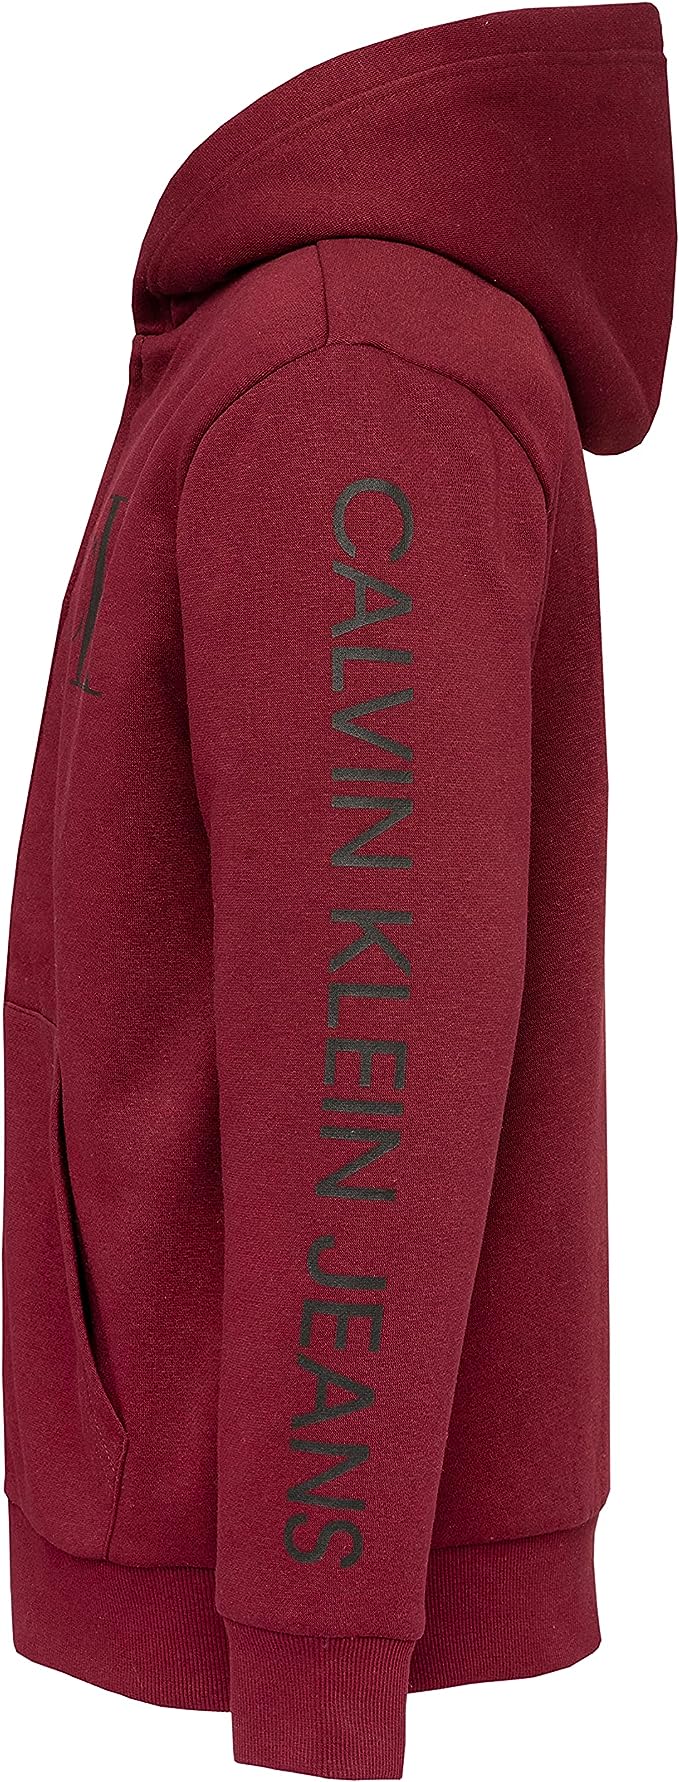 Calvin Klein Boys' Long Sleeve Full Zip Fleece Hoodie